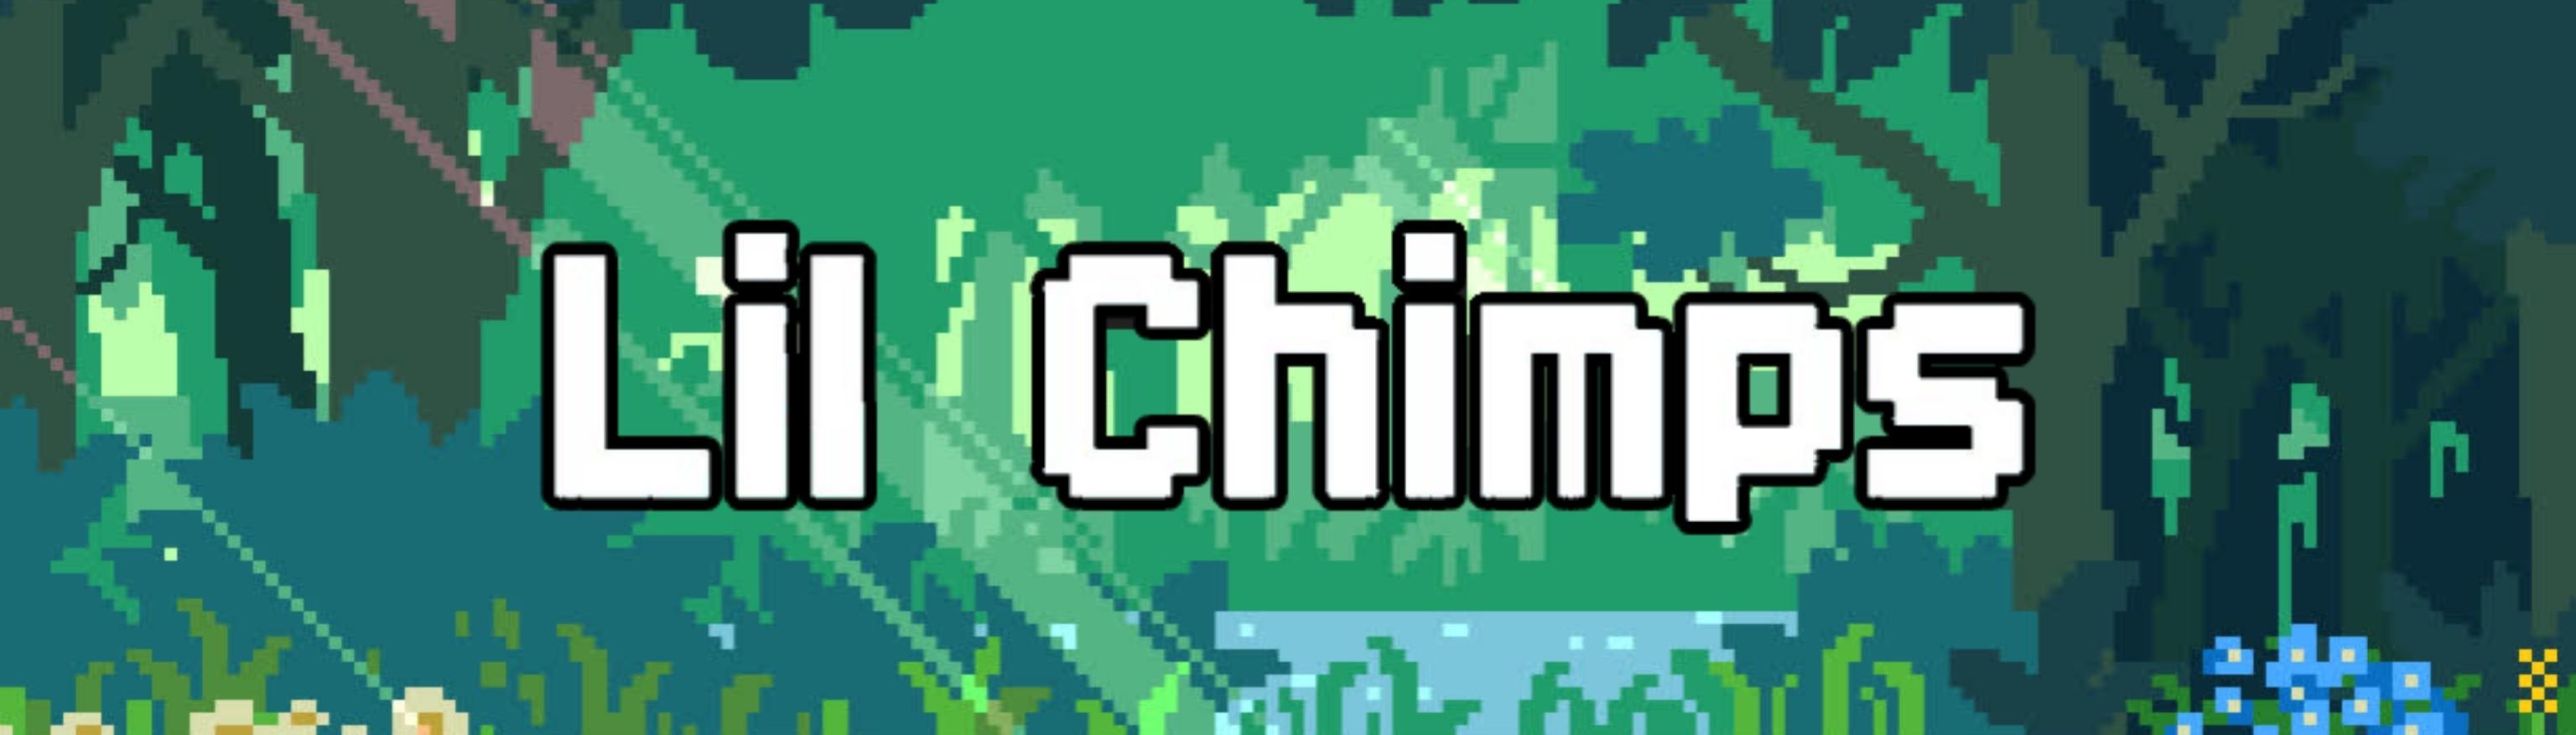 Lil Chimps - Official